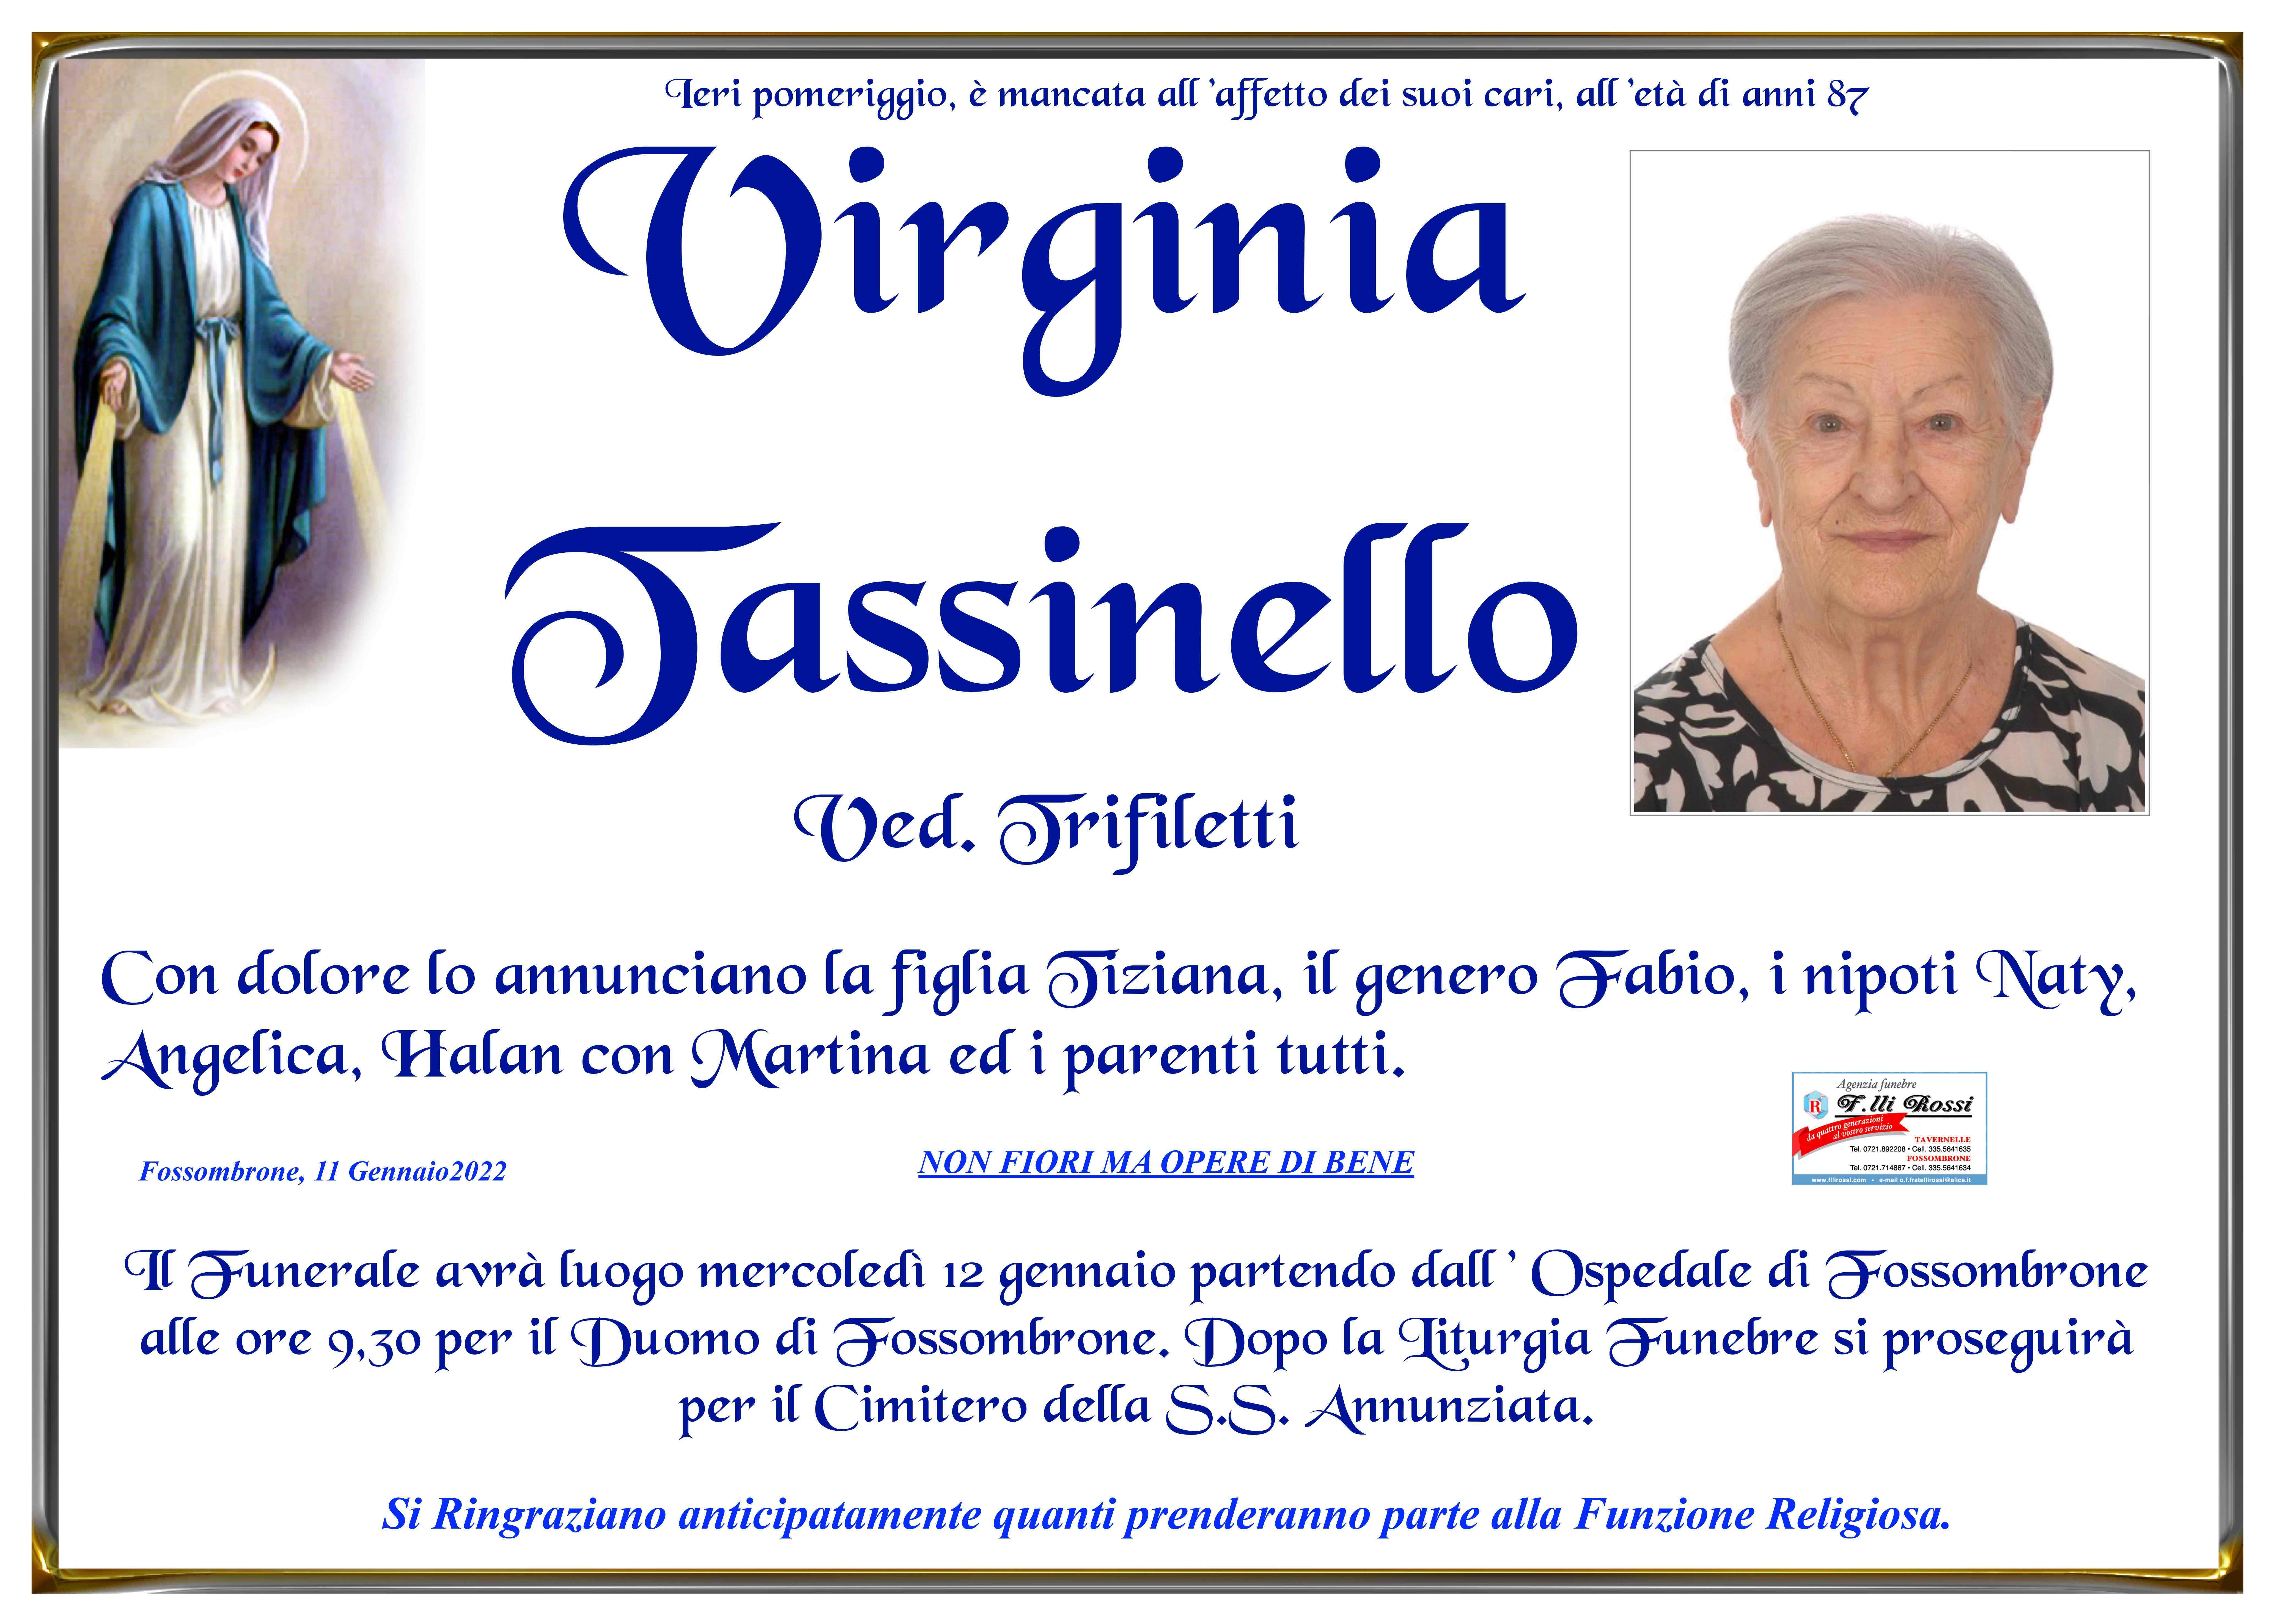 Virginia Tassinello